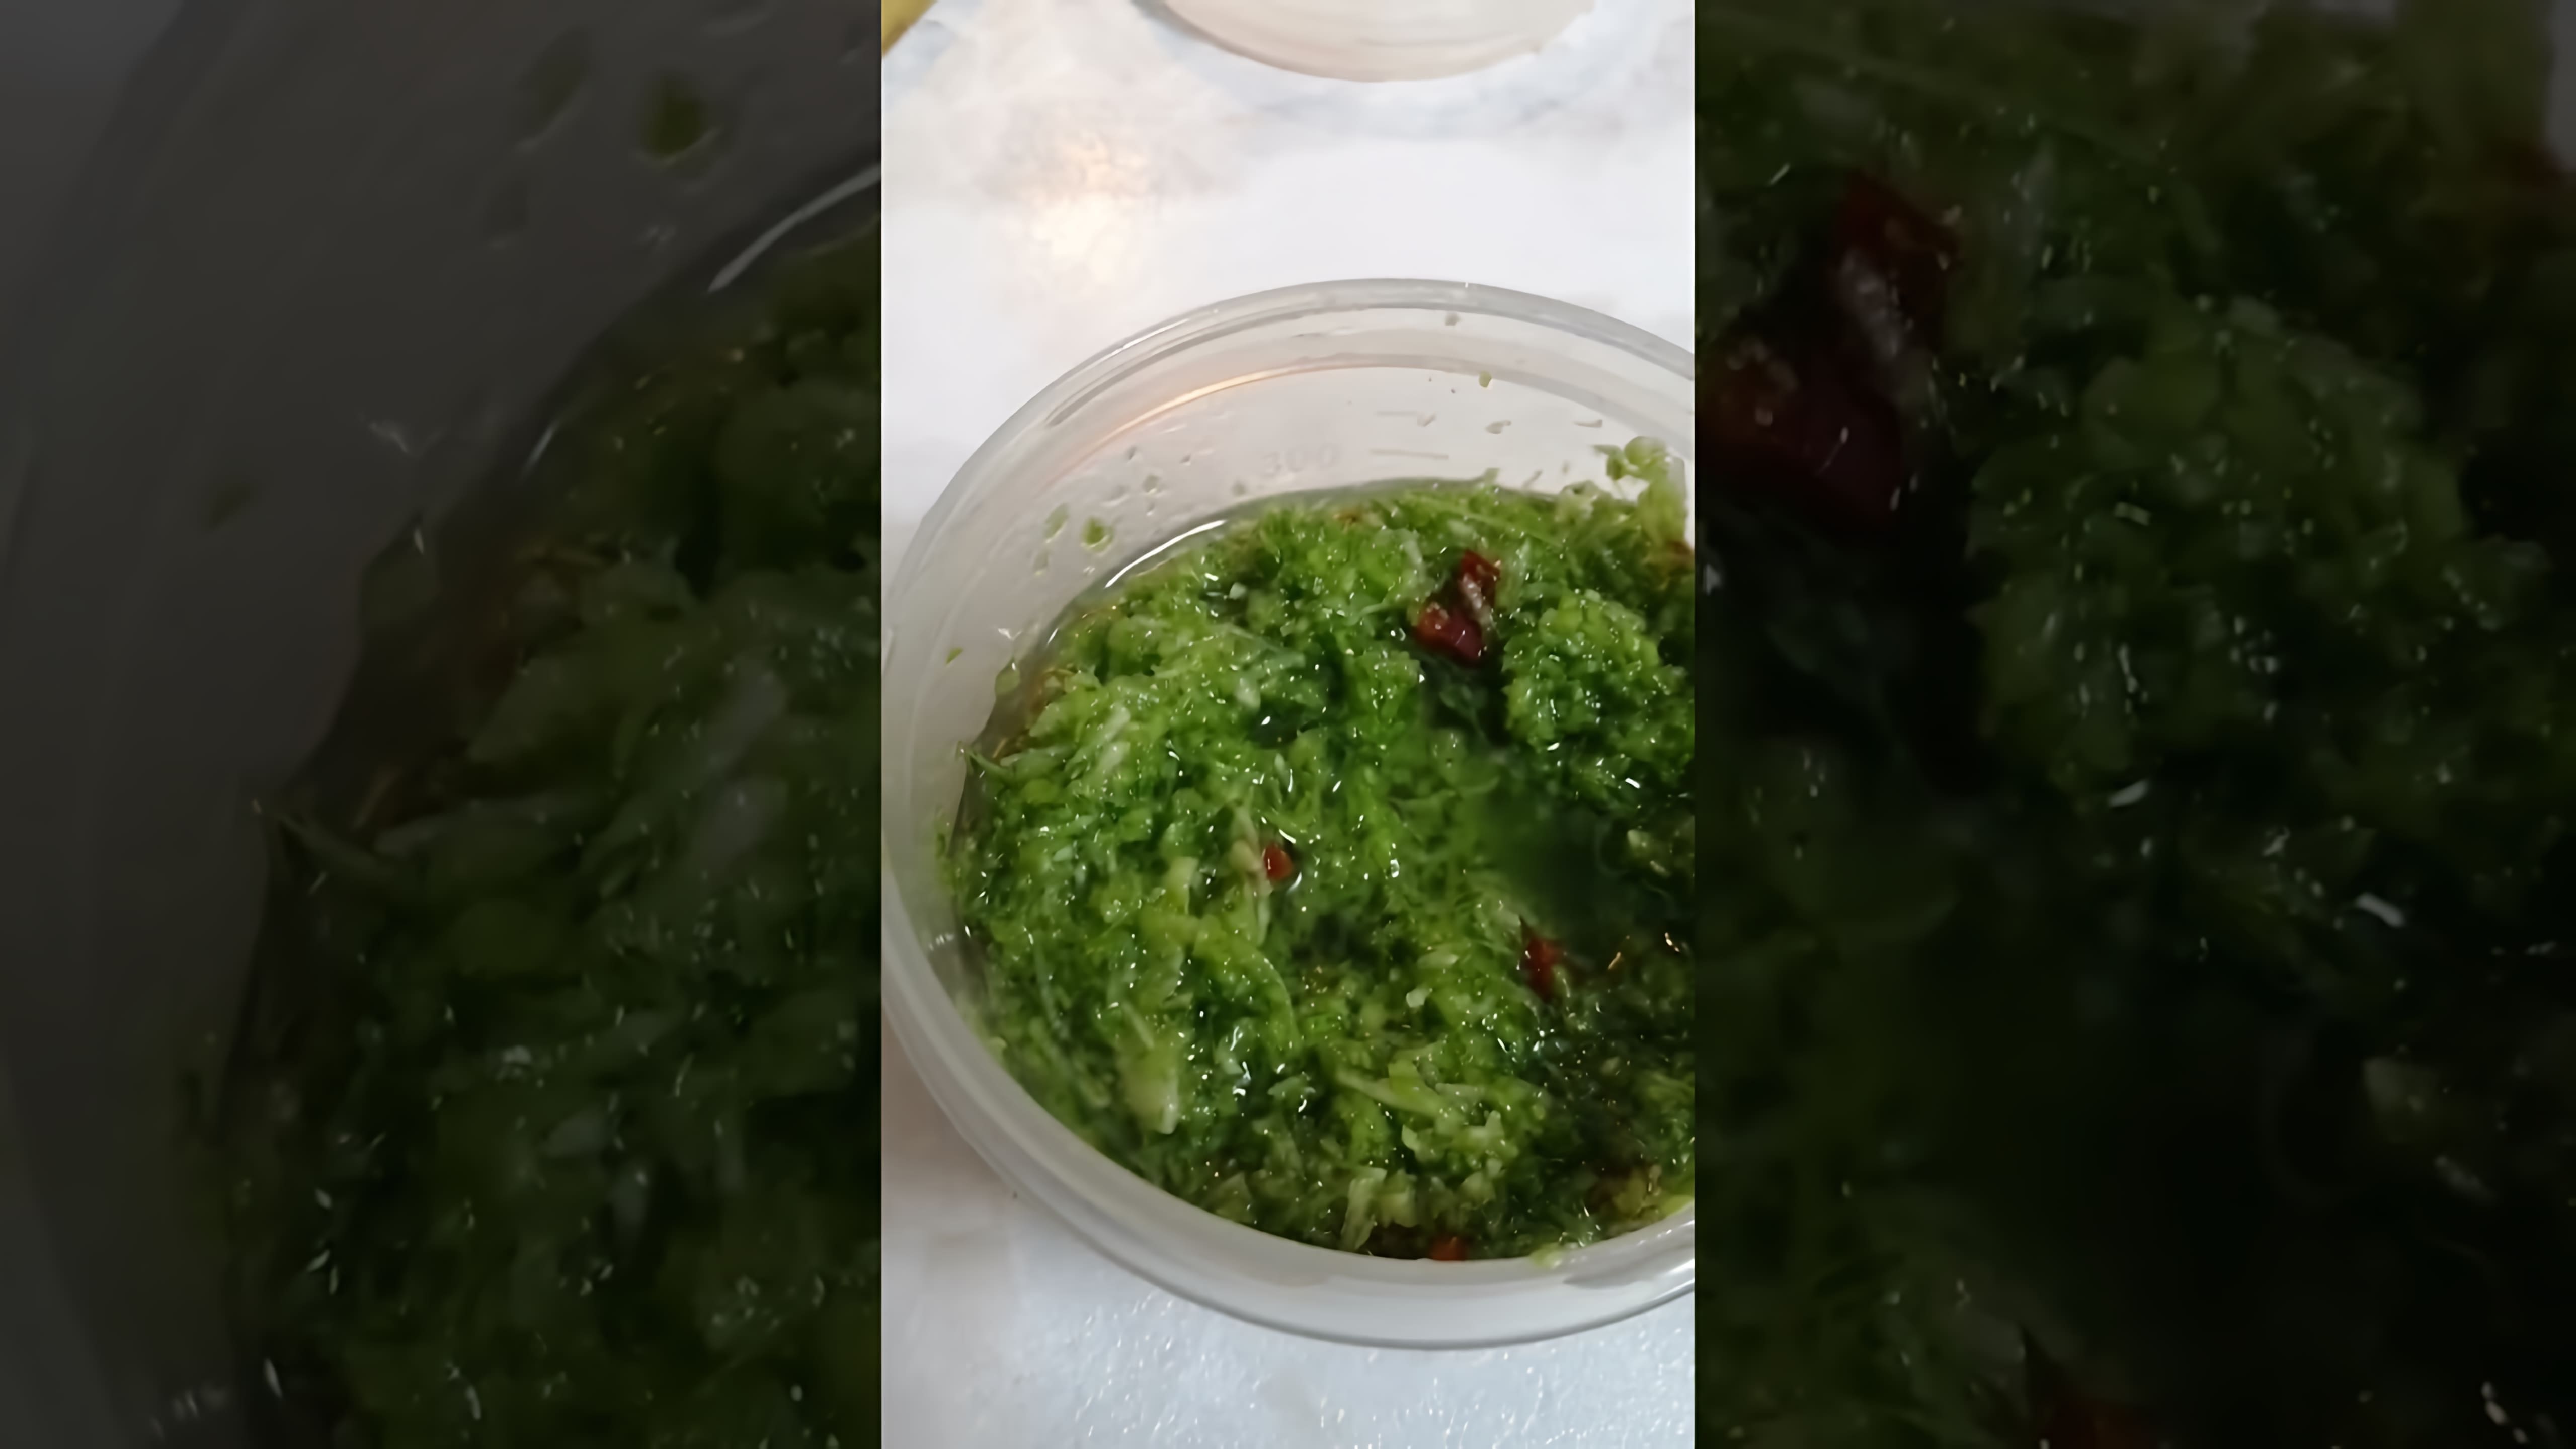 В этом видео демонстрируется процесс приготовления вкусного соуса для помидор из стеблей петрушки, чеснока и острого перца